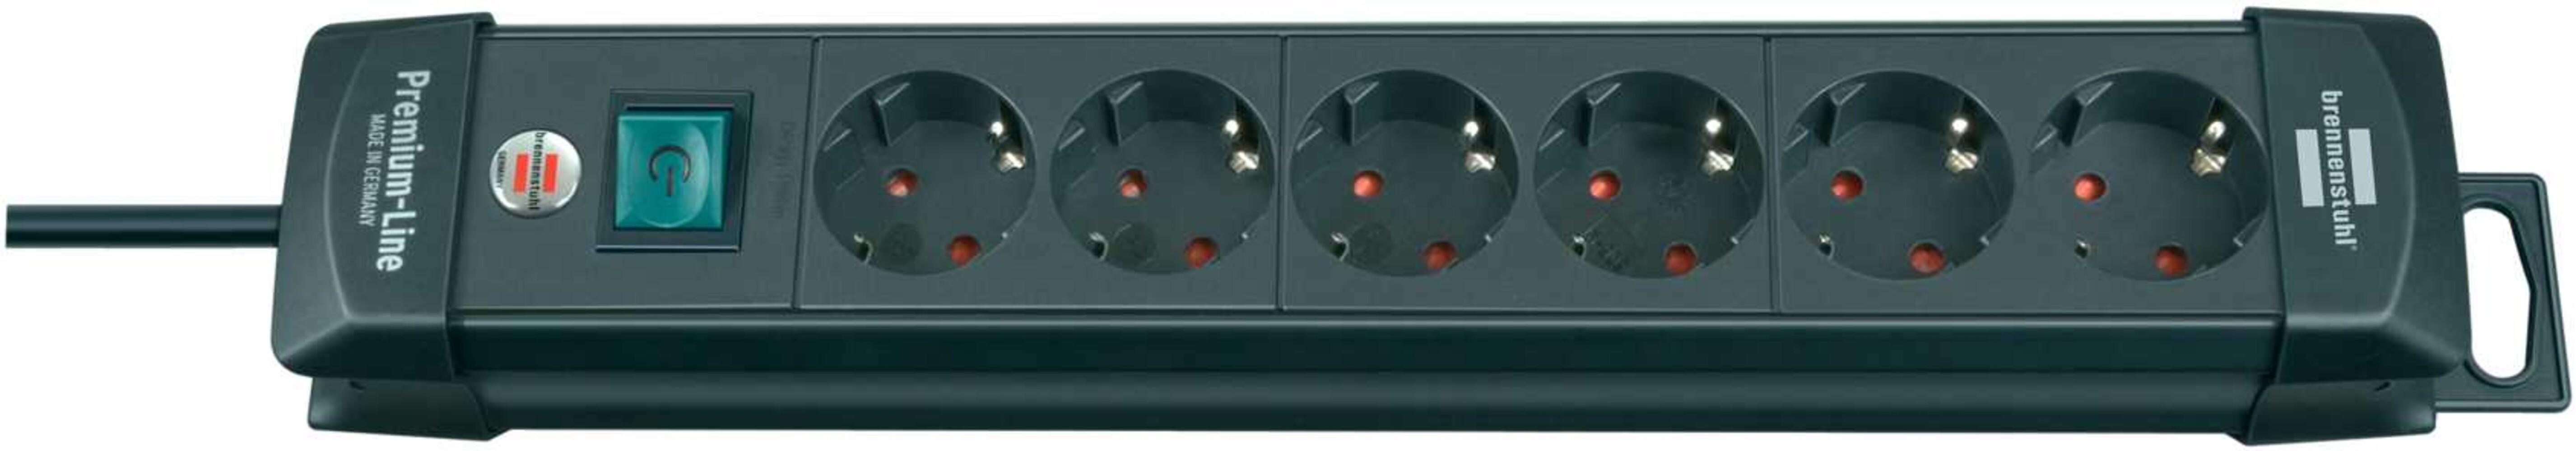 Hochwertige schwarze Steckdosenleiste der Brennenstuhl Premium Line mit 6 fach Steckerleiste, Schalter und 3m Kabel